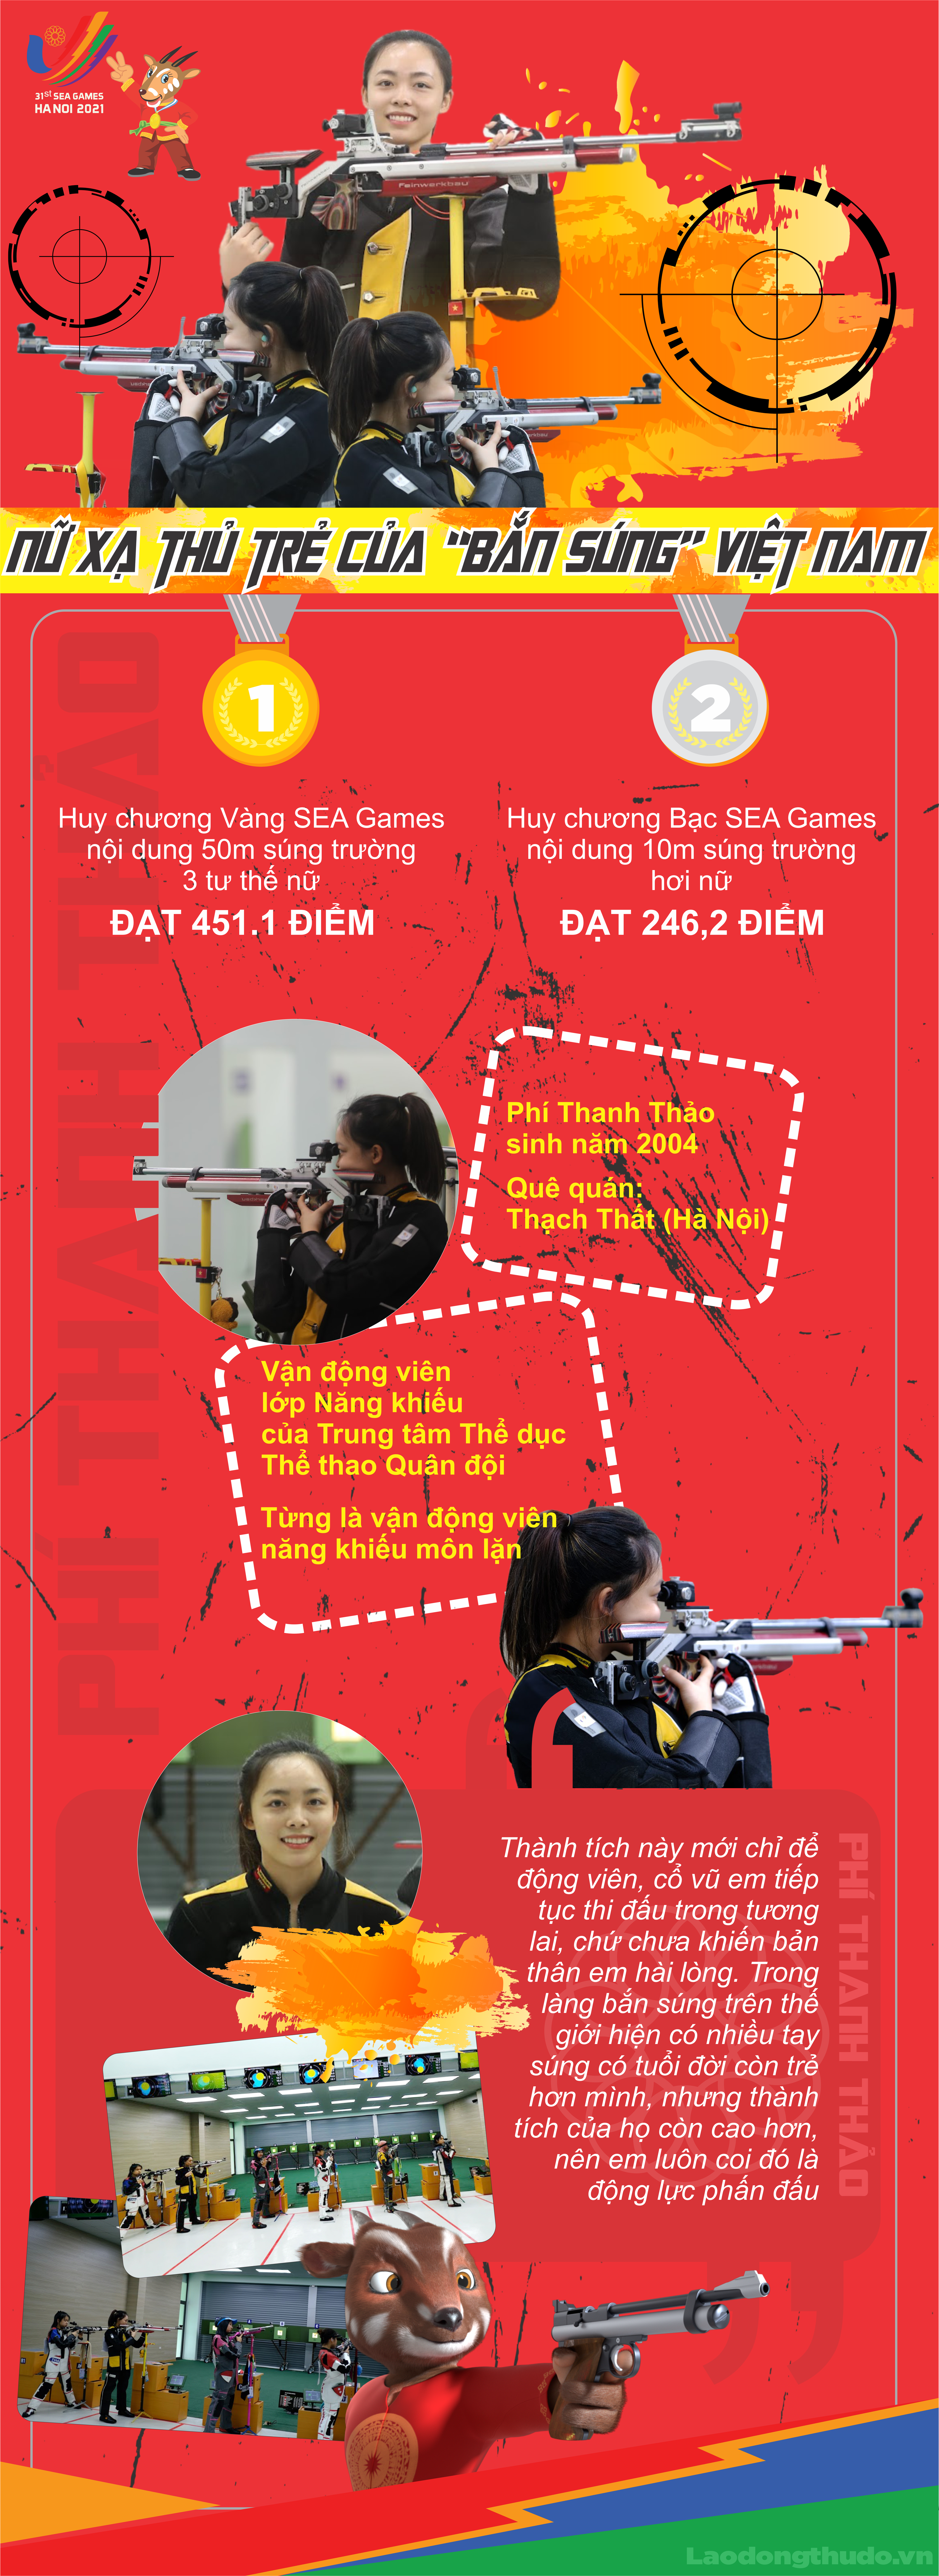 Infographic: Nữ xạ thủ trẻ của “Bắn súng” Việt Nam